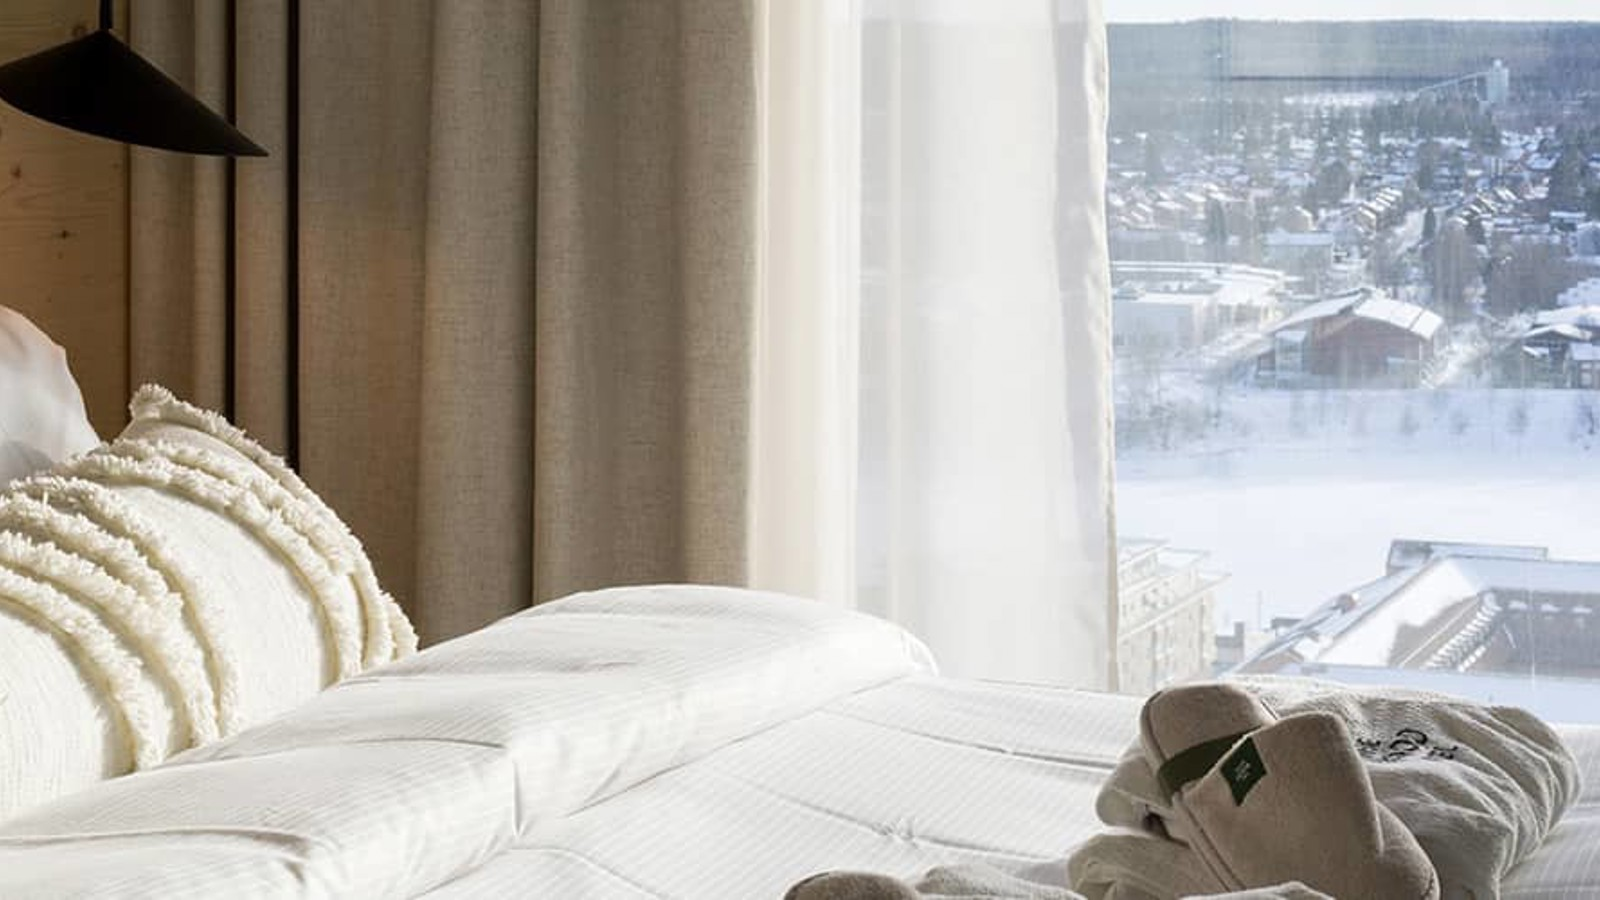 Mysigt hotellrum med utsikt över vinterlandskap